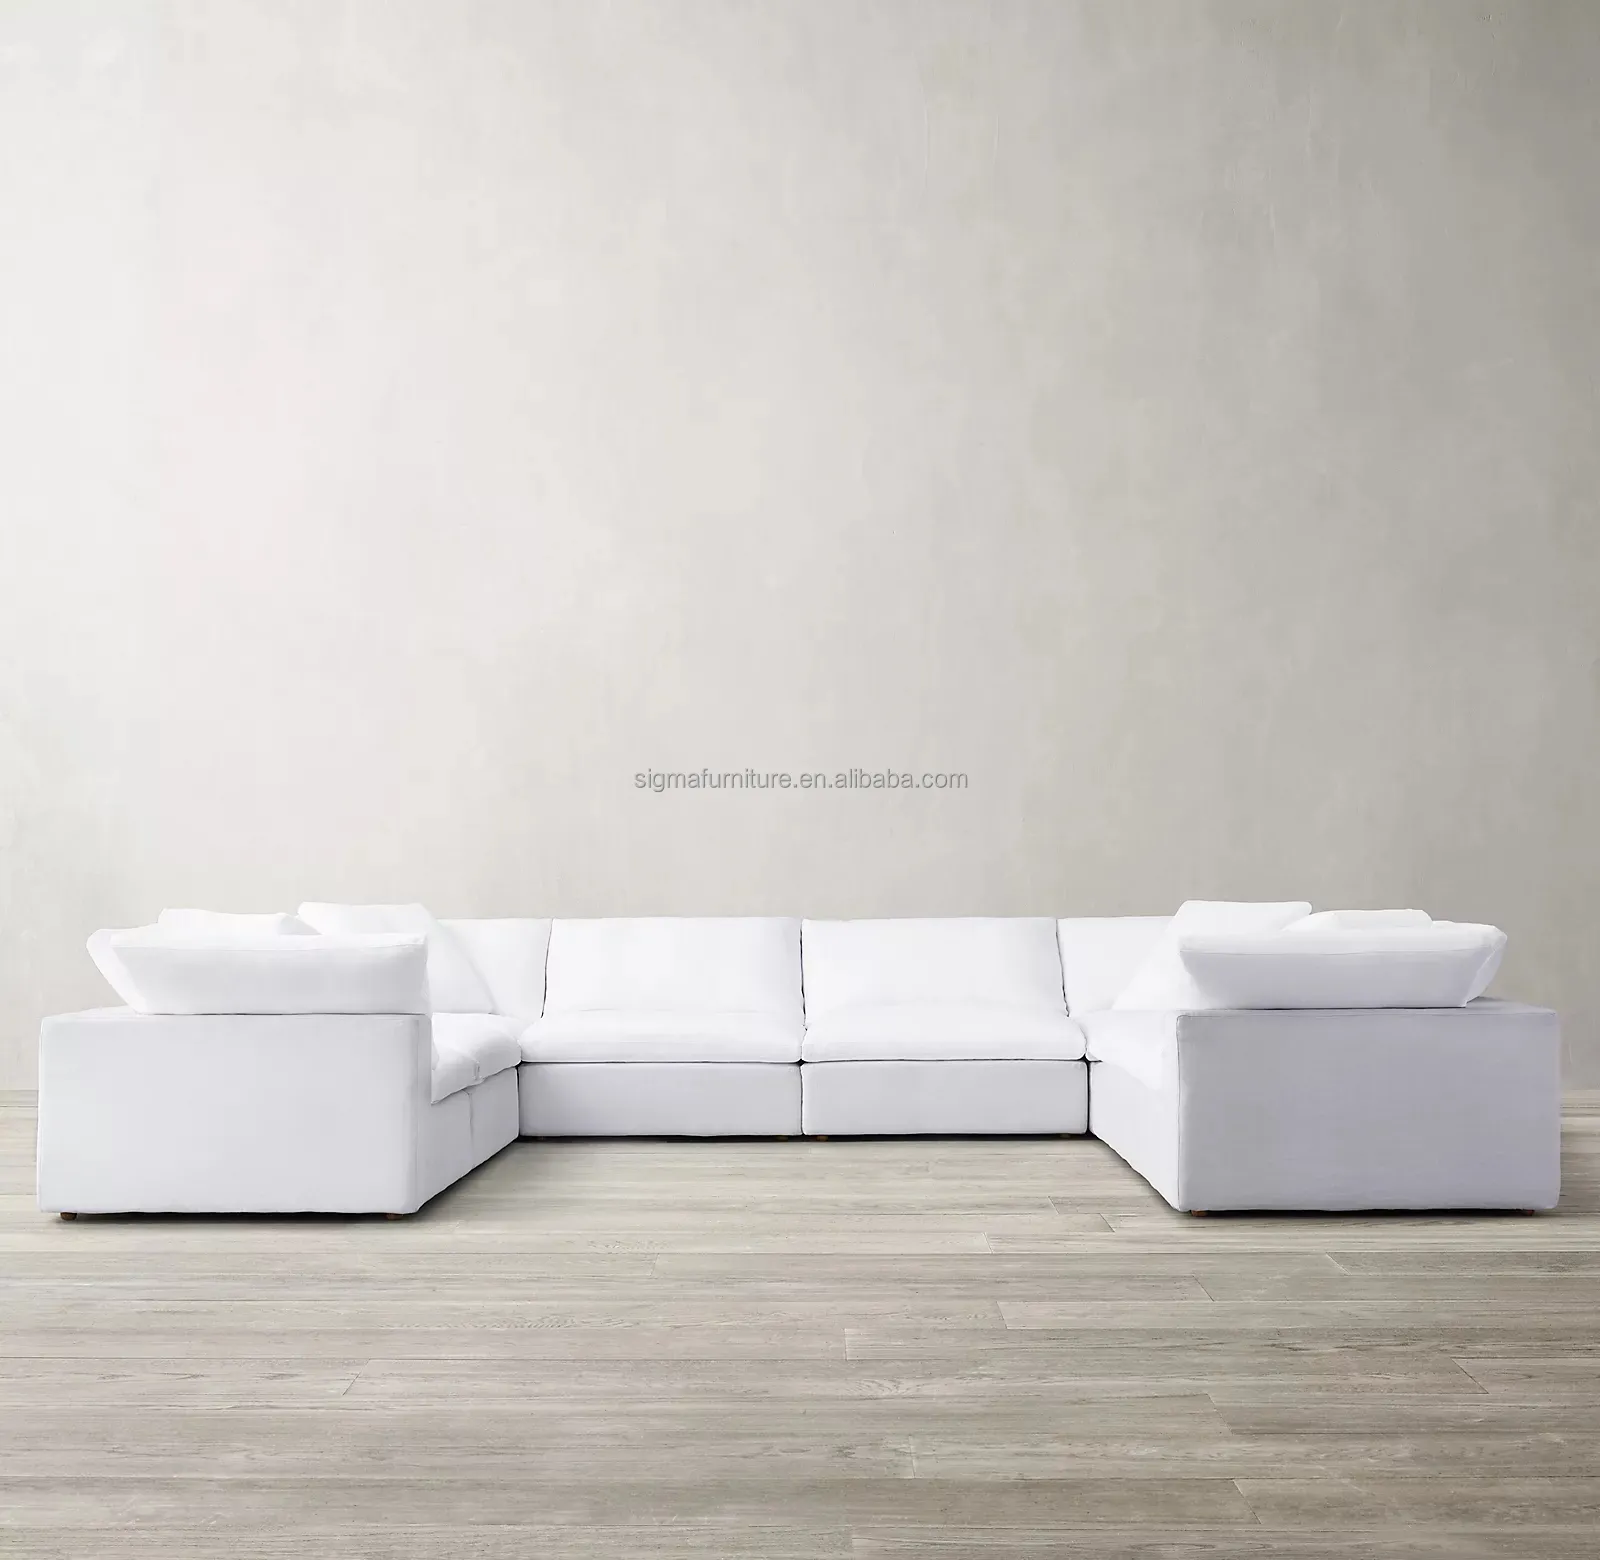 Sofá cama de estilo nórdico de diseño caliente, muebles modernos para sala de estar, conjunto de sofá en nube, sofá modular seccional en forma de L